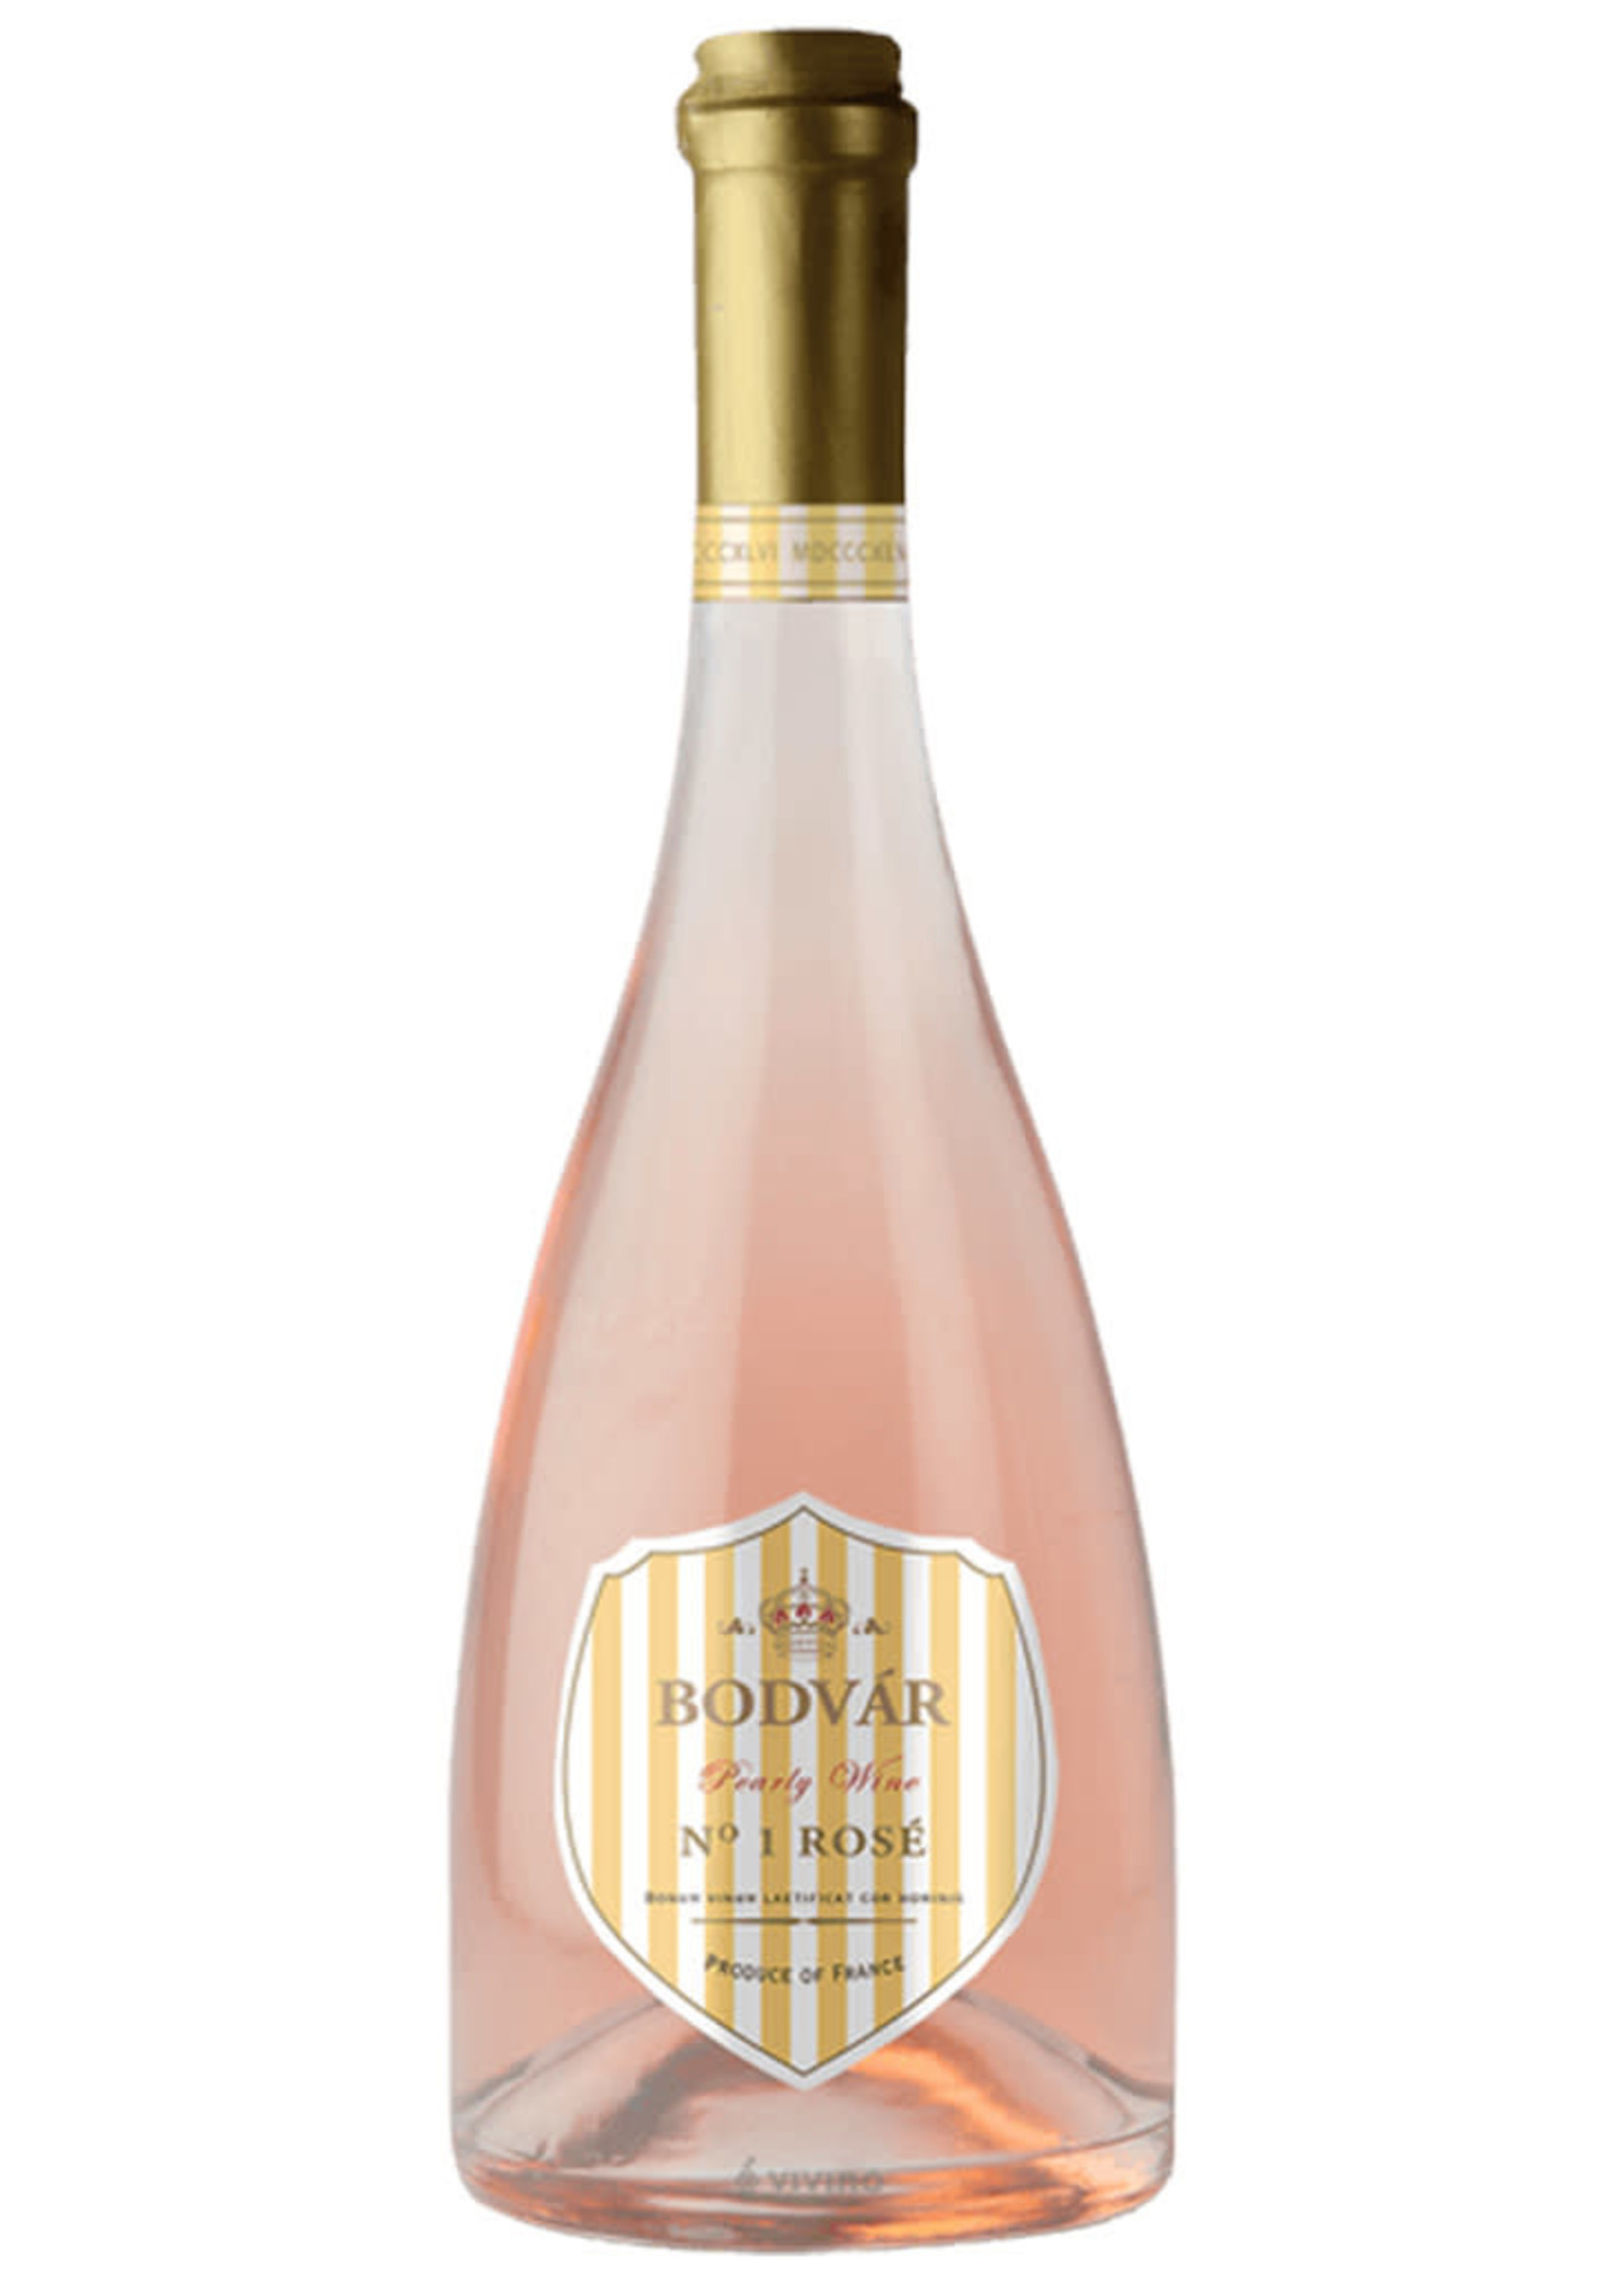 Bodvar 2019 Pearly No. 1 Rosé, Semi-Sparkling, Languedoc Roussillon, Vin de France